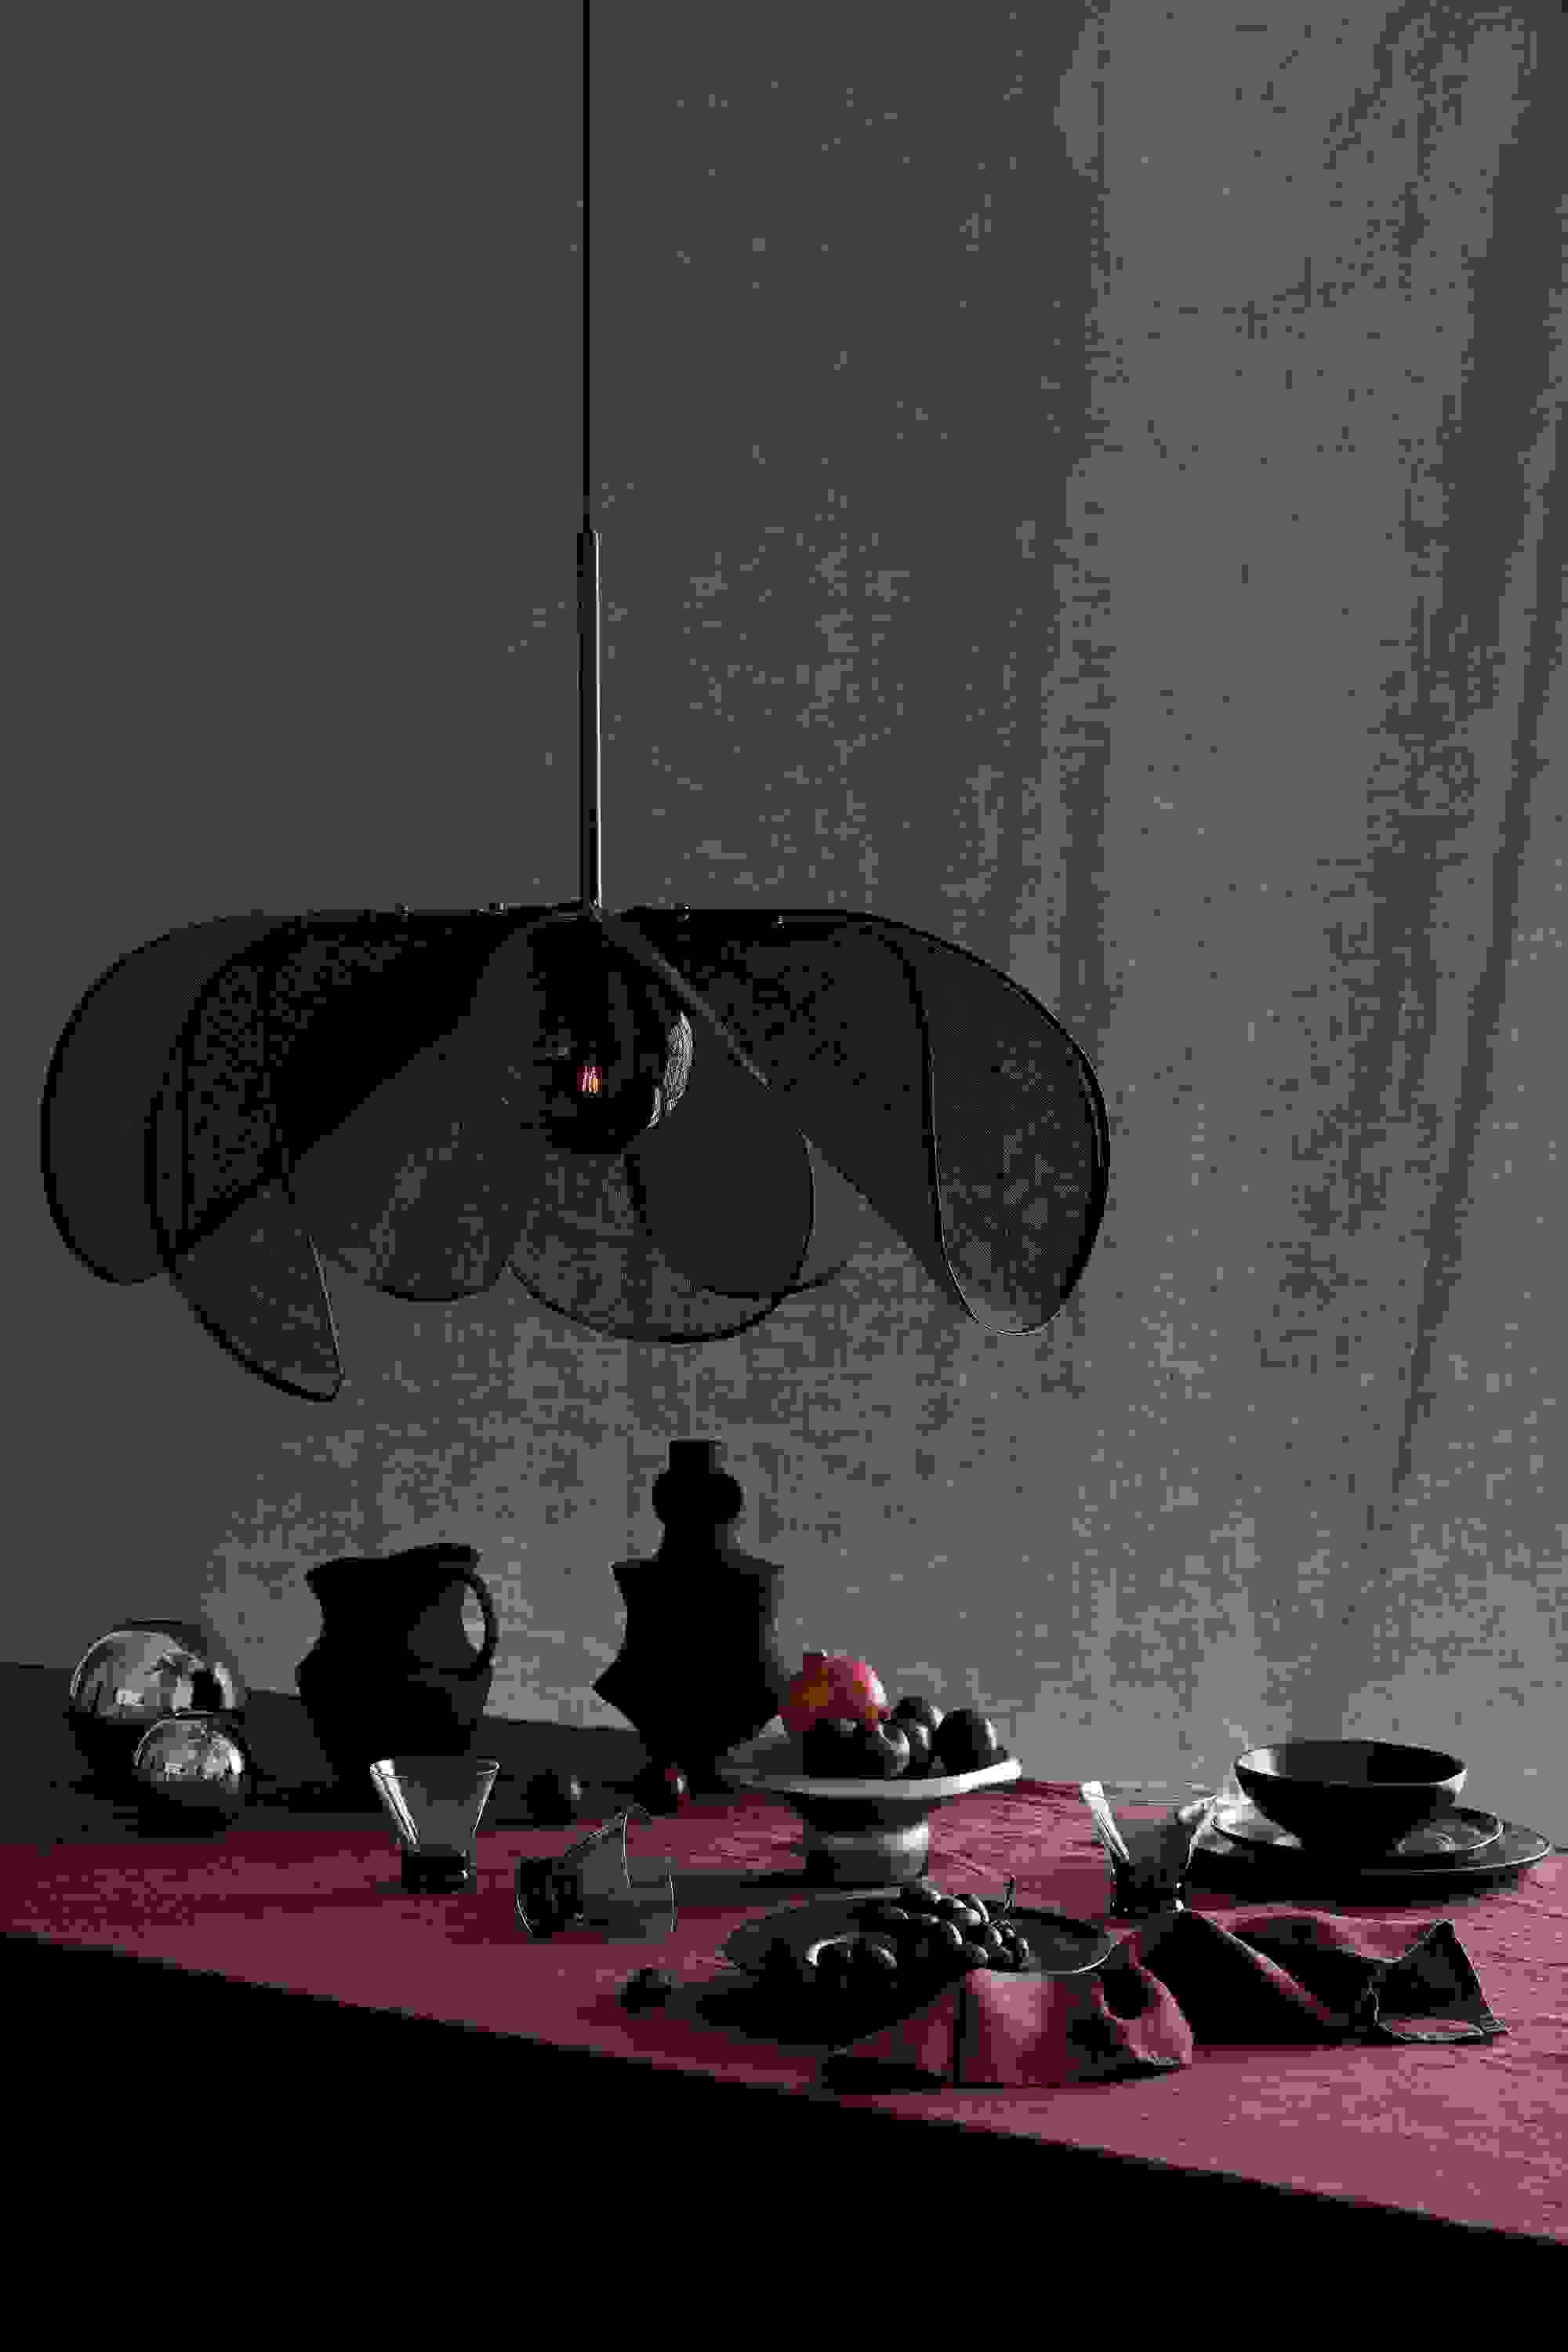 Styrka - Ceiling lamp Black 75cm